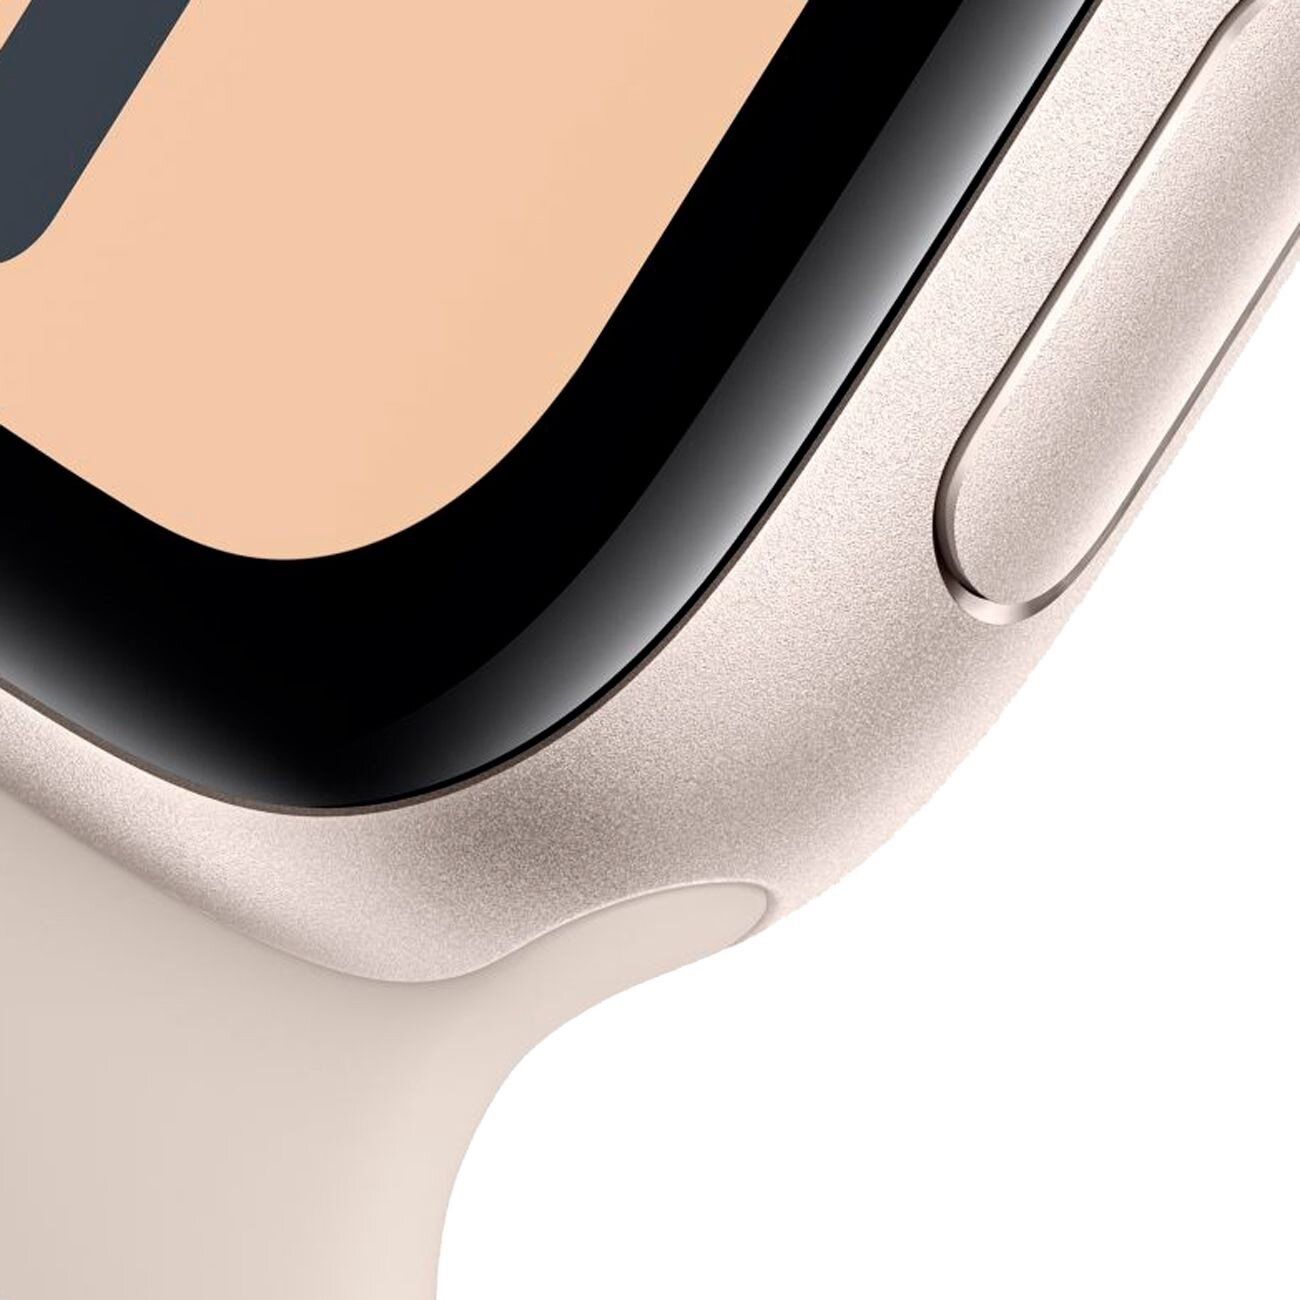 Купить Apple iWatch SE 40mm (Gold) - Умные часы